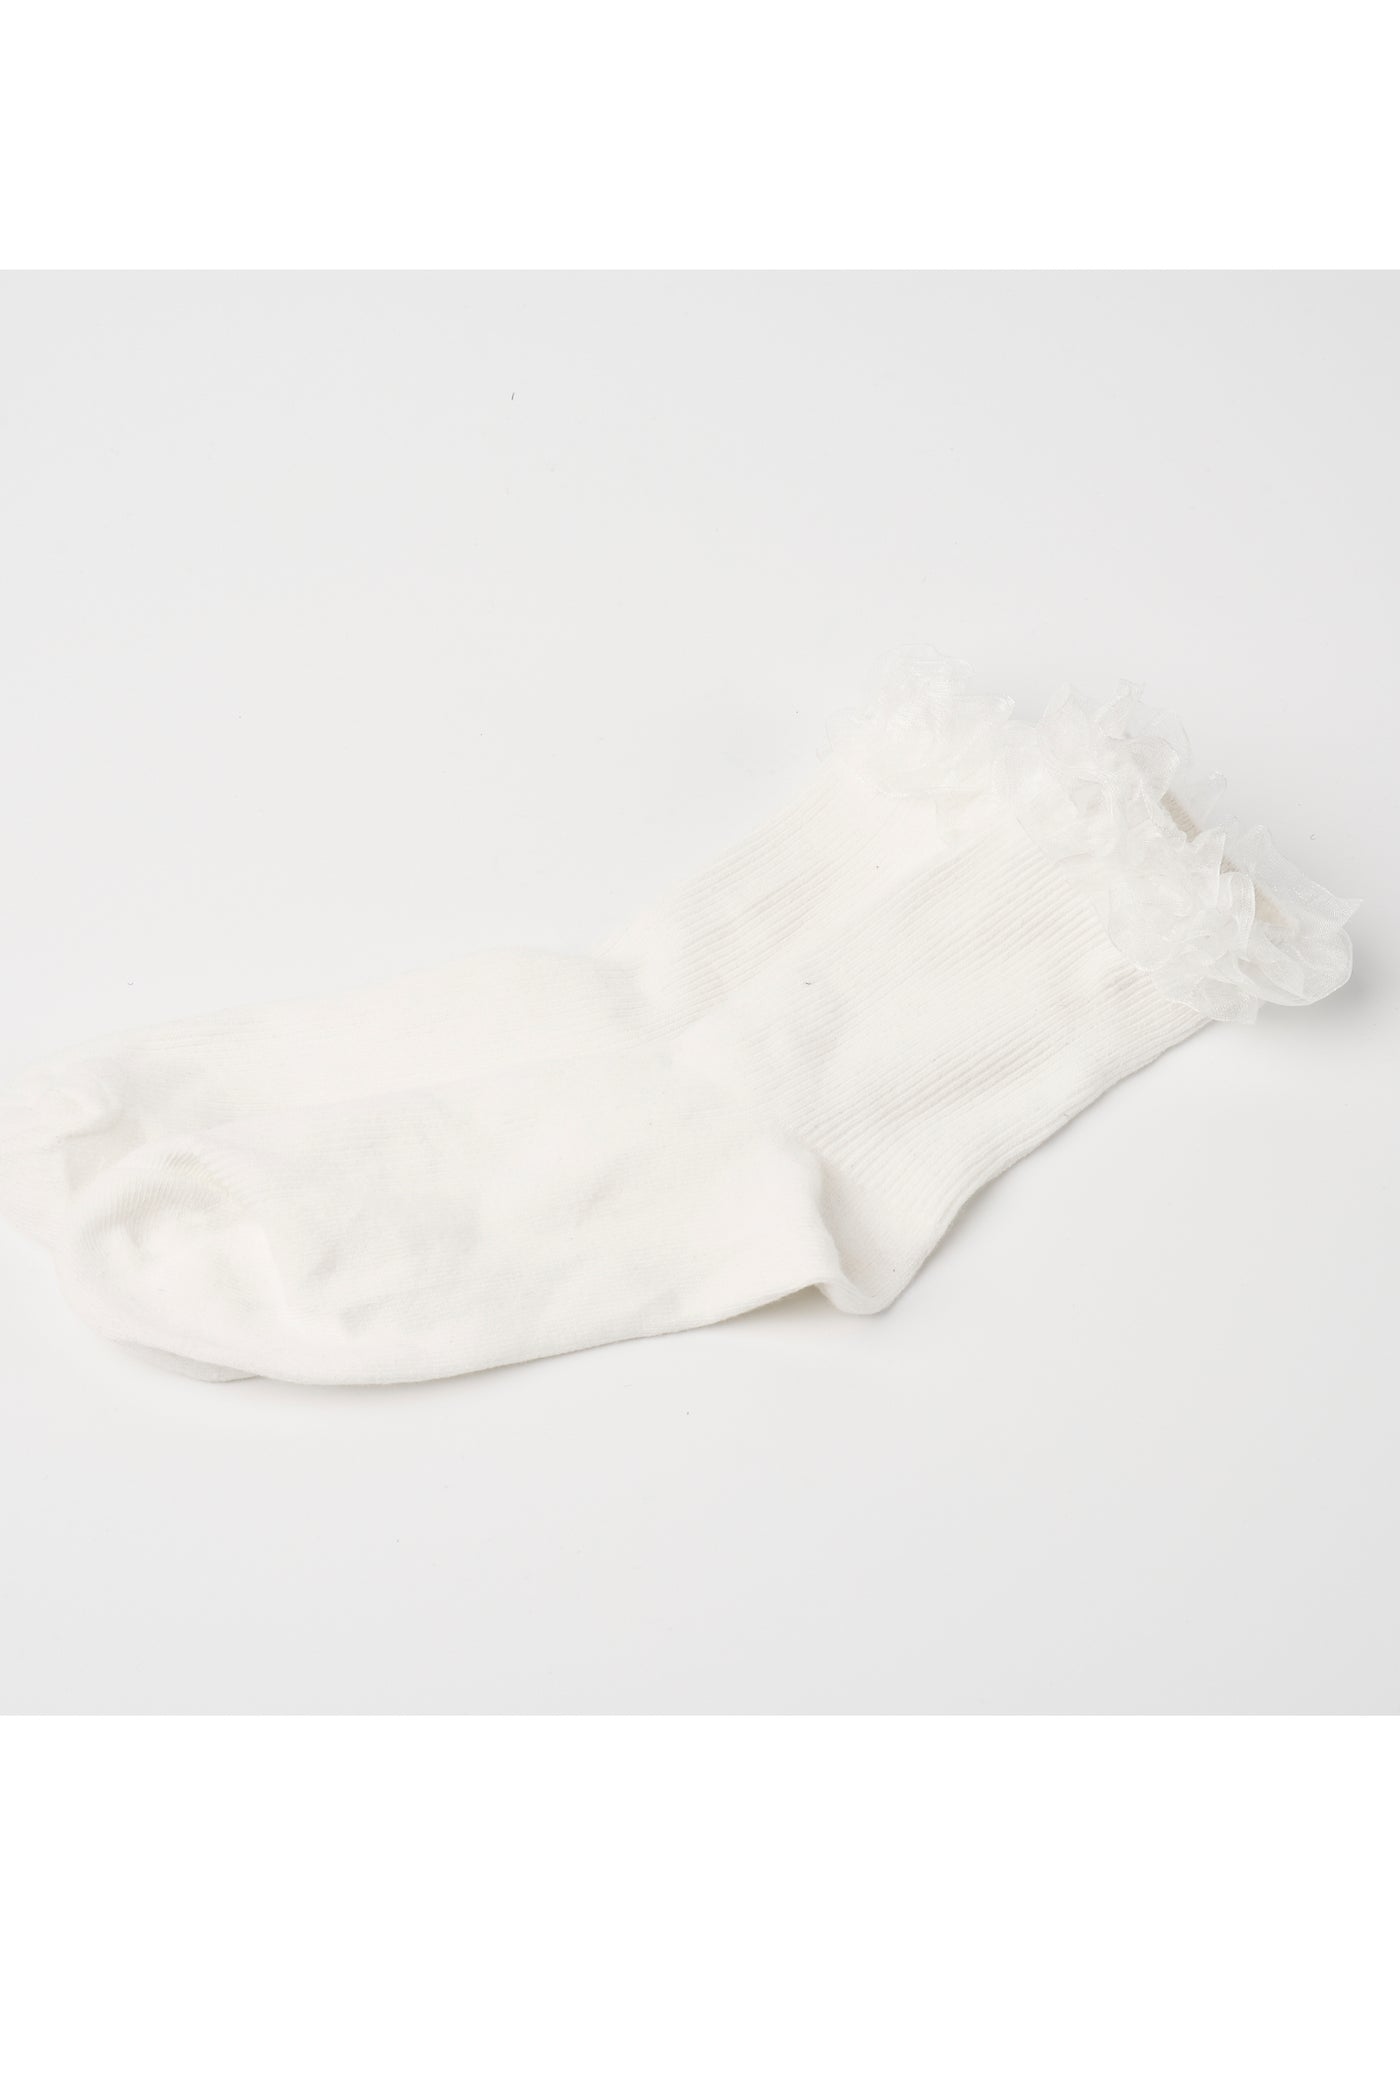 storets.com Ruffled Lace Socks